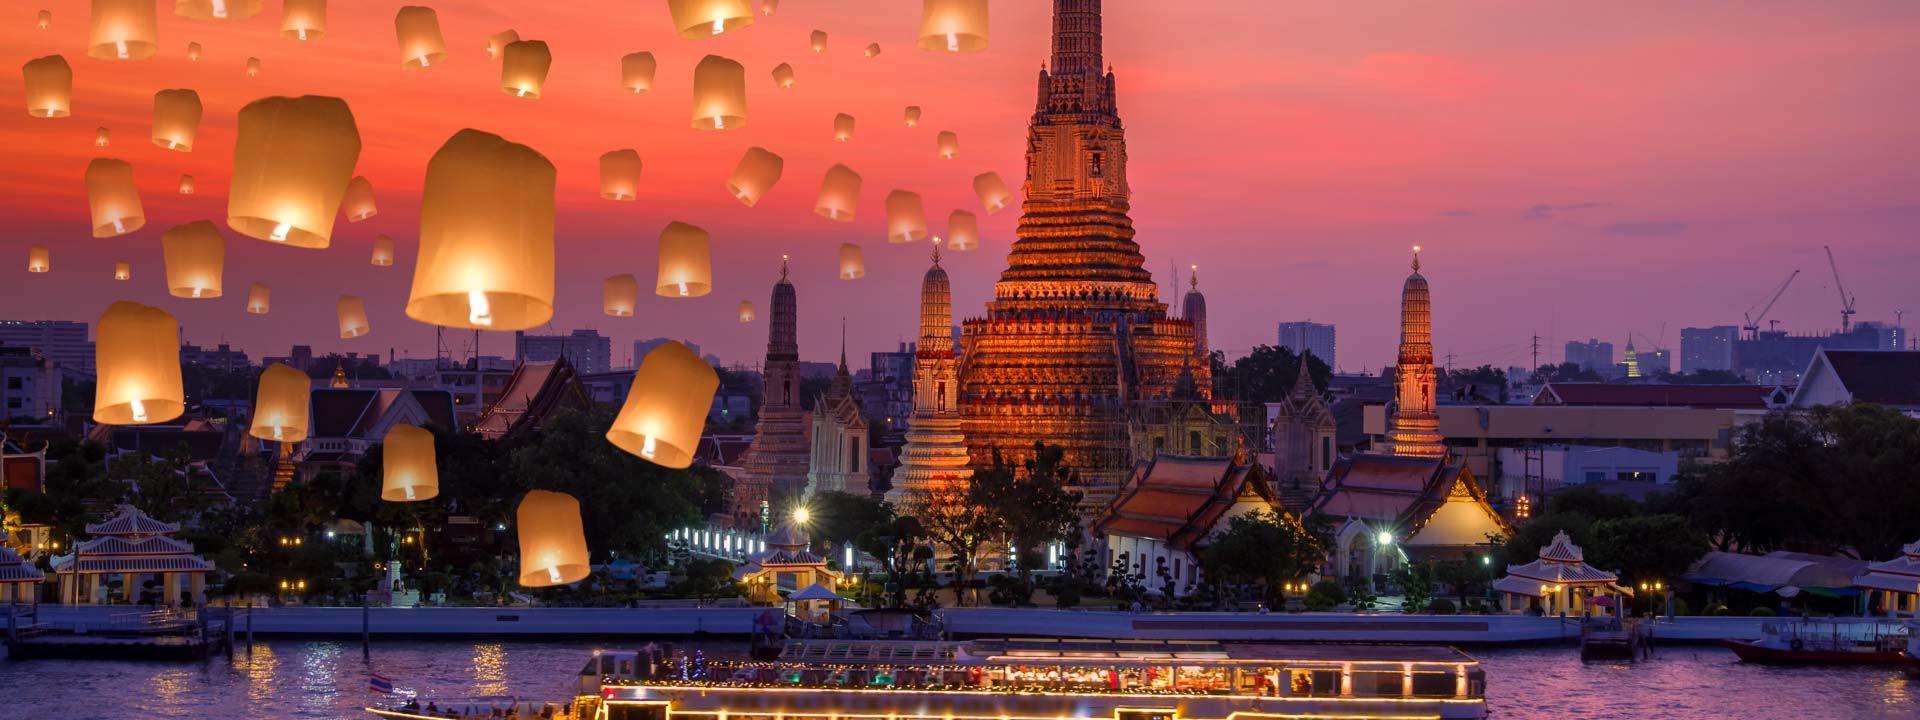 Tailandia romántica 11 días